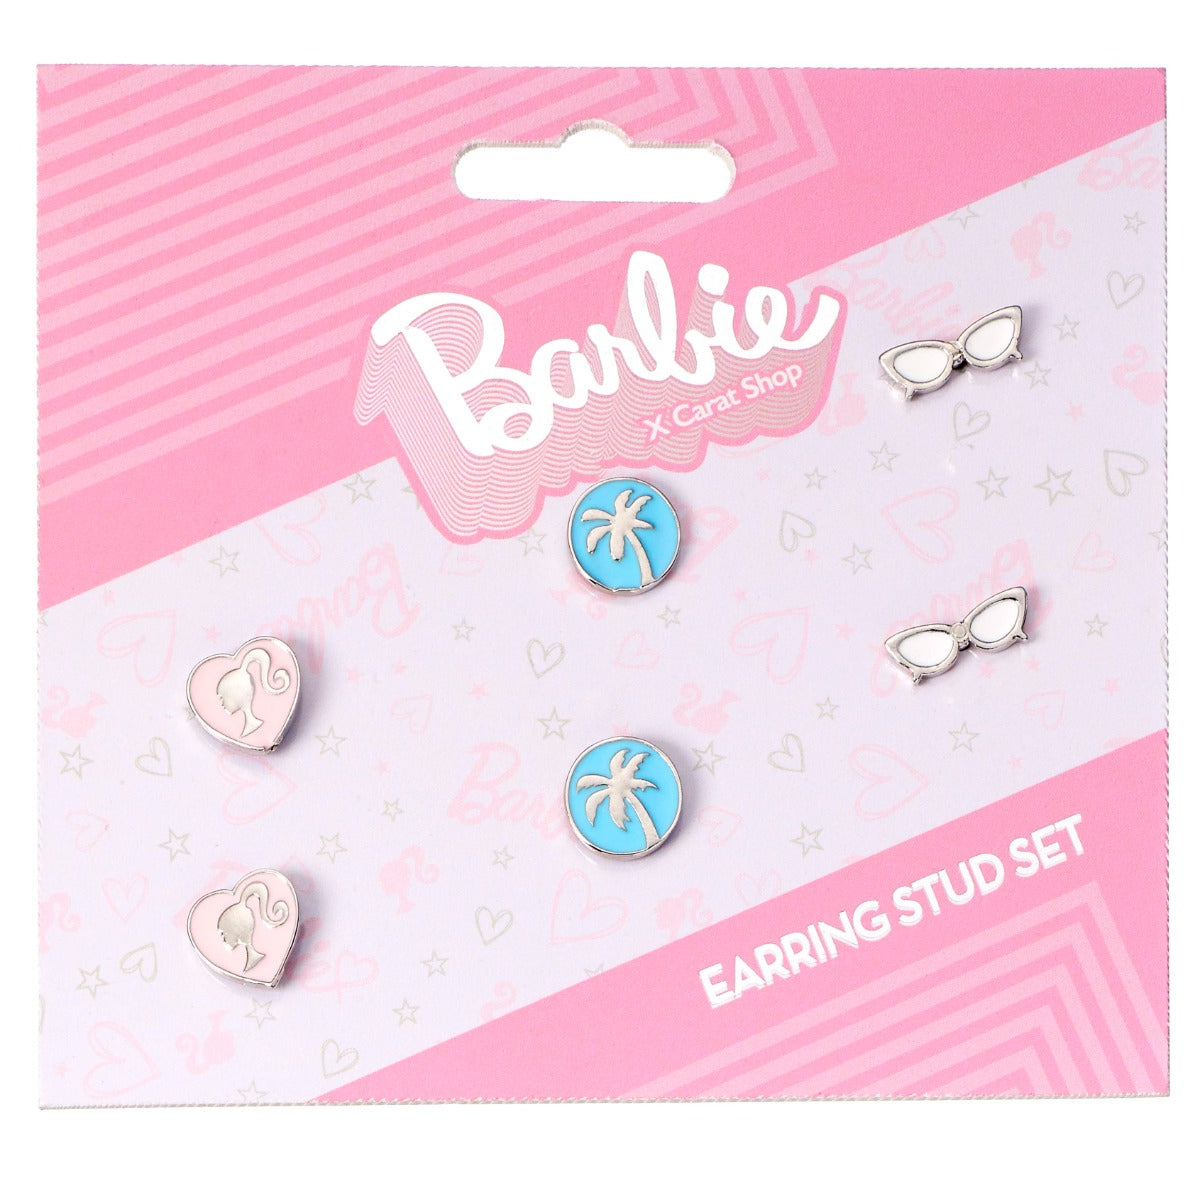 Barbie Stud Earrings set of 3